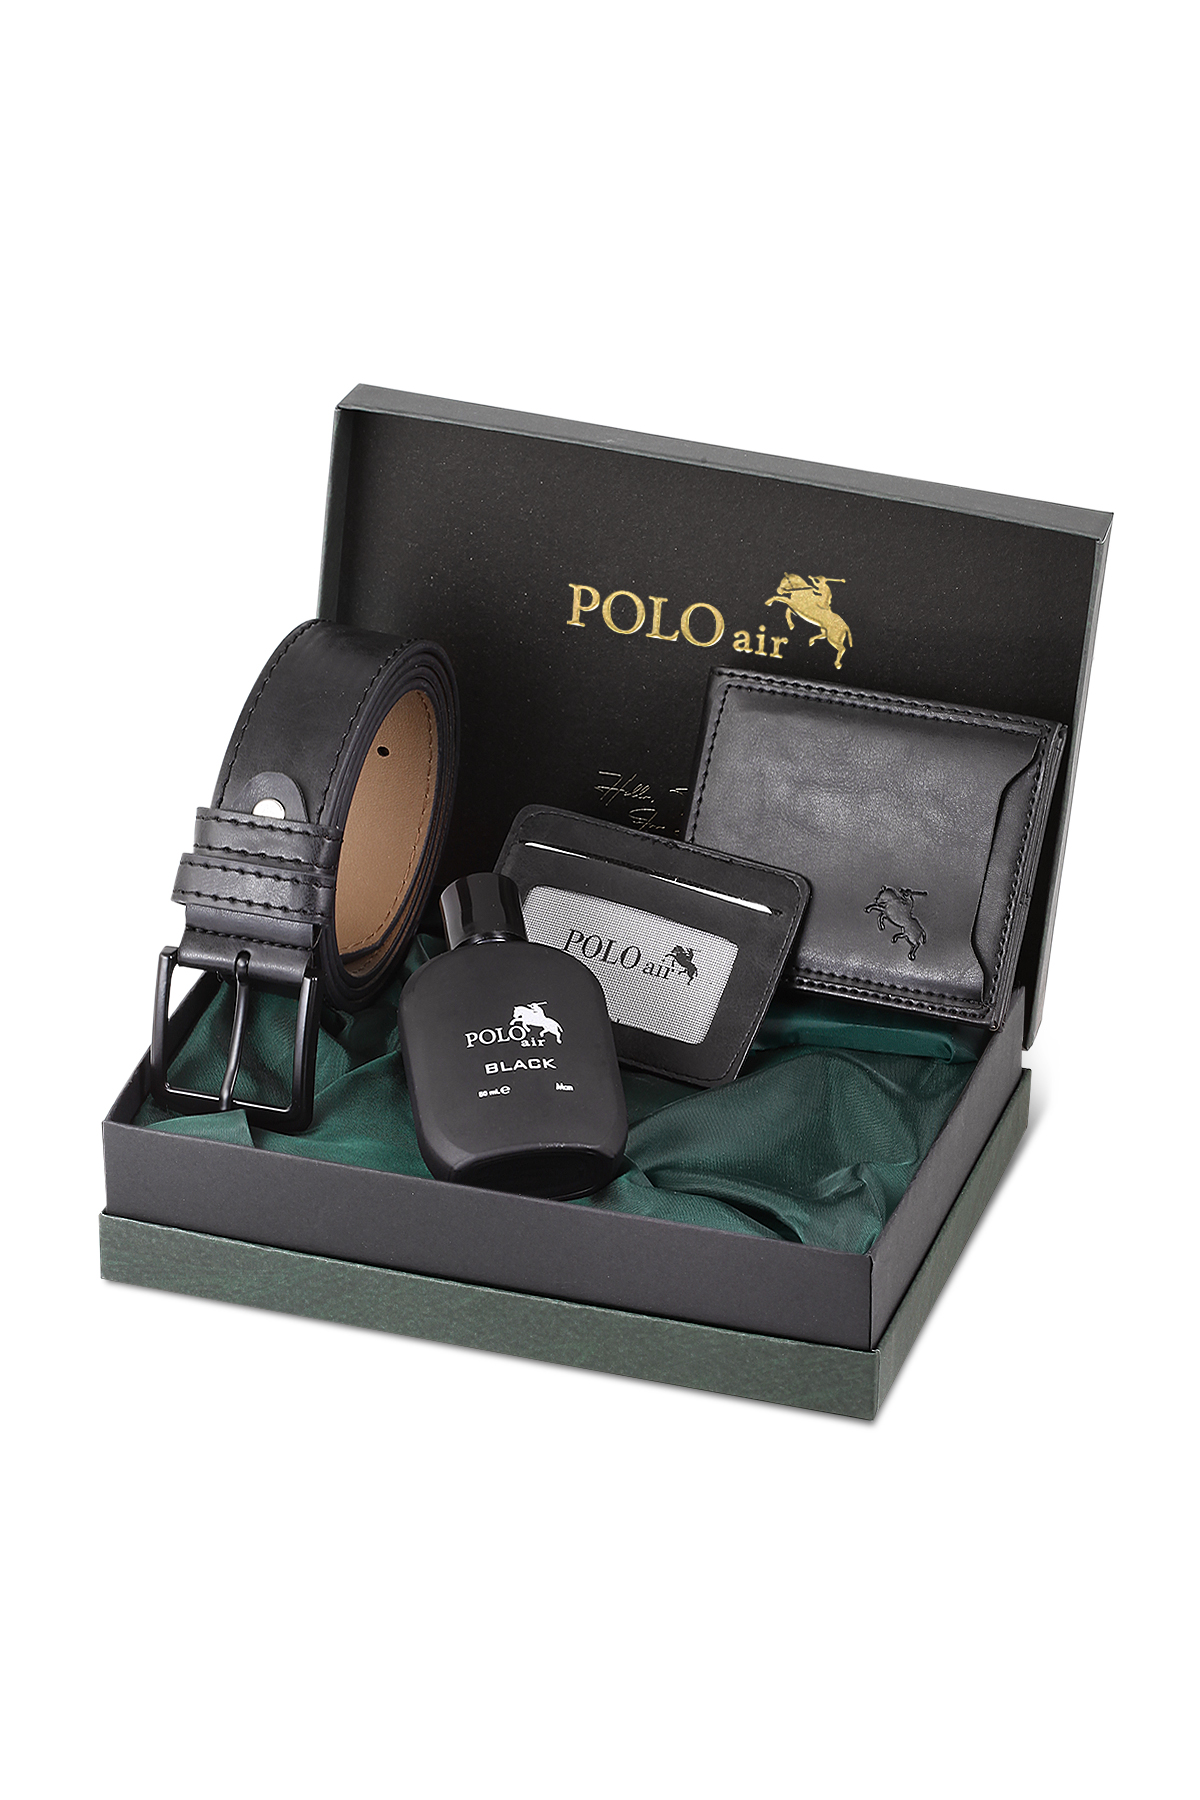 Polo Air Kişiye Özel Erkek Kapıda Ödeme Hediye Paketli   PM-08-G